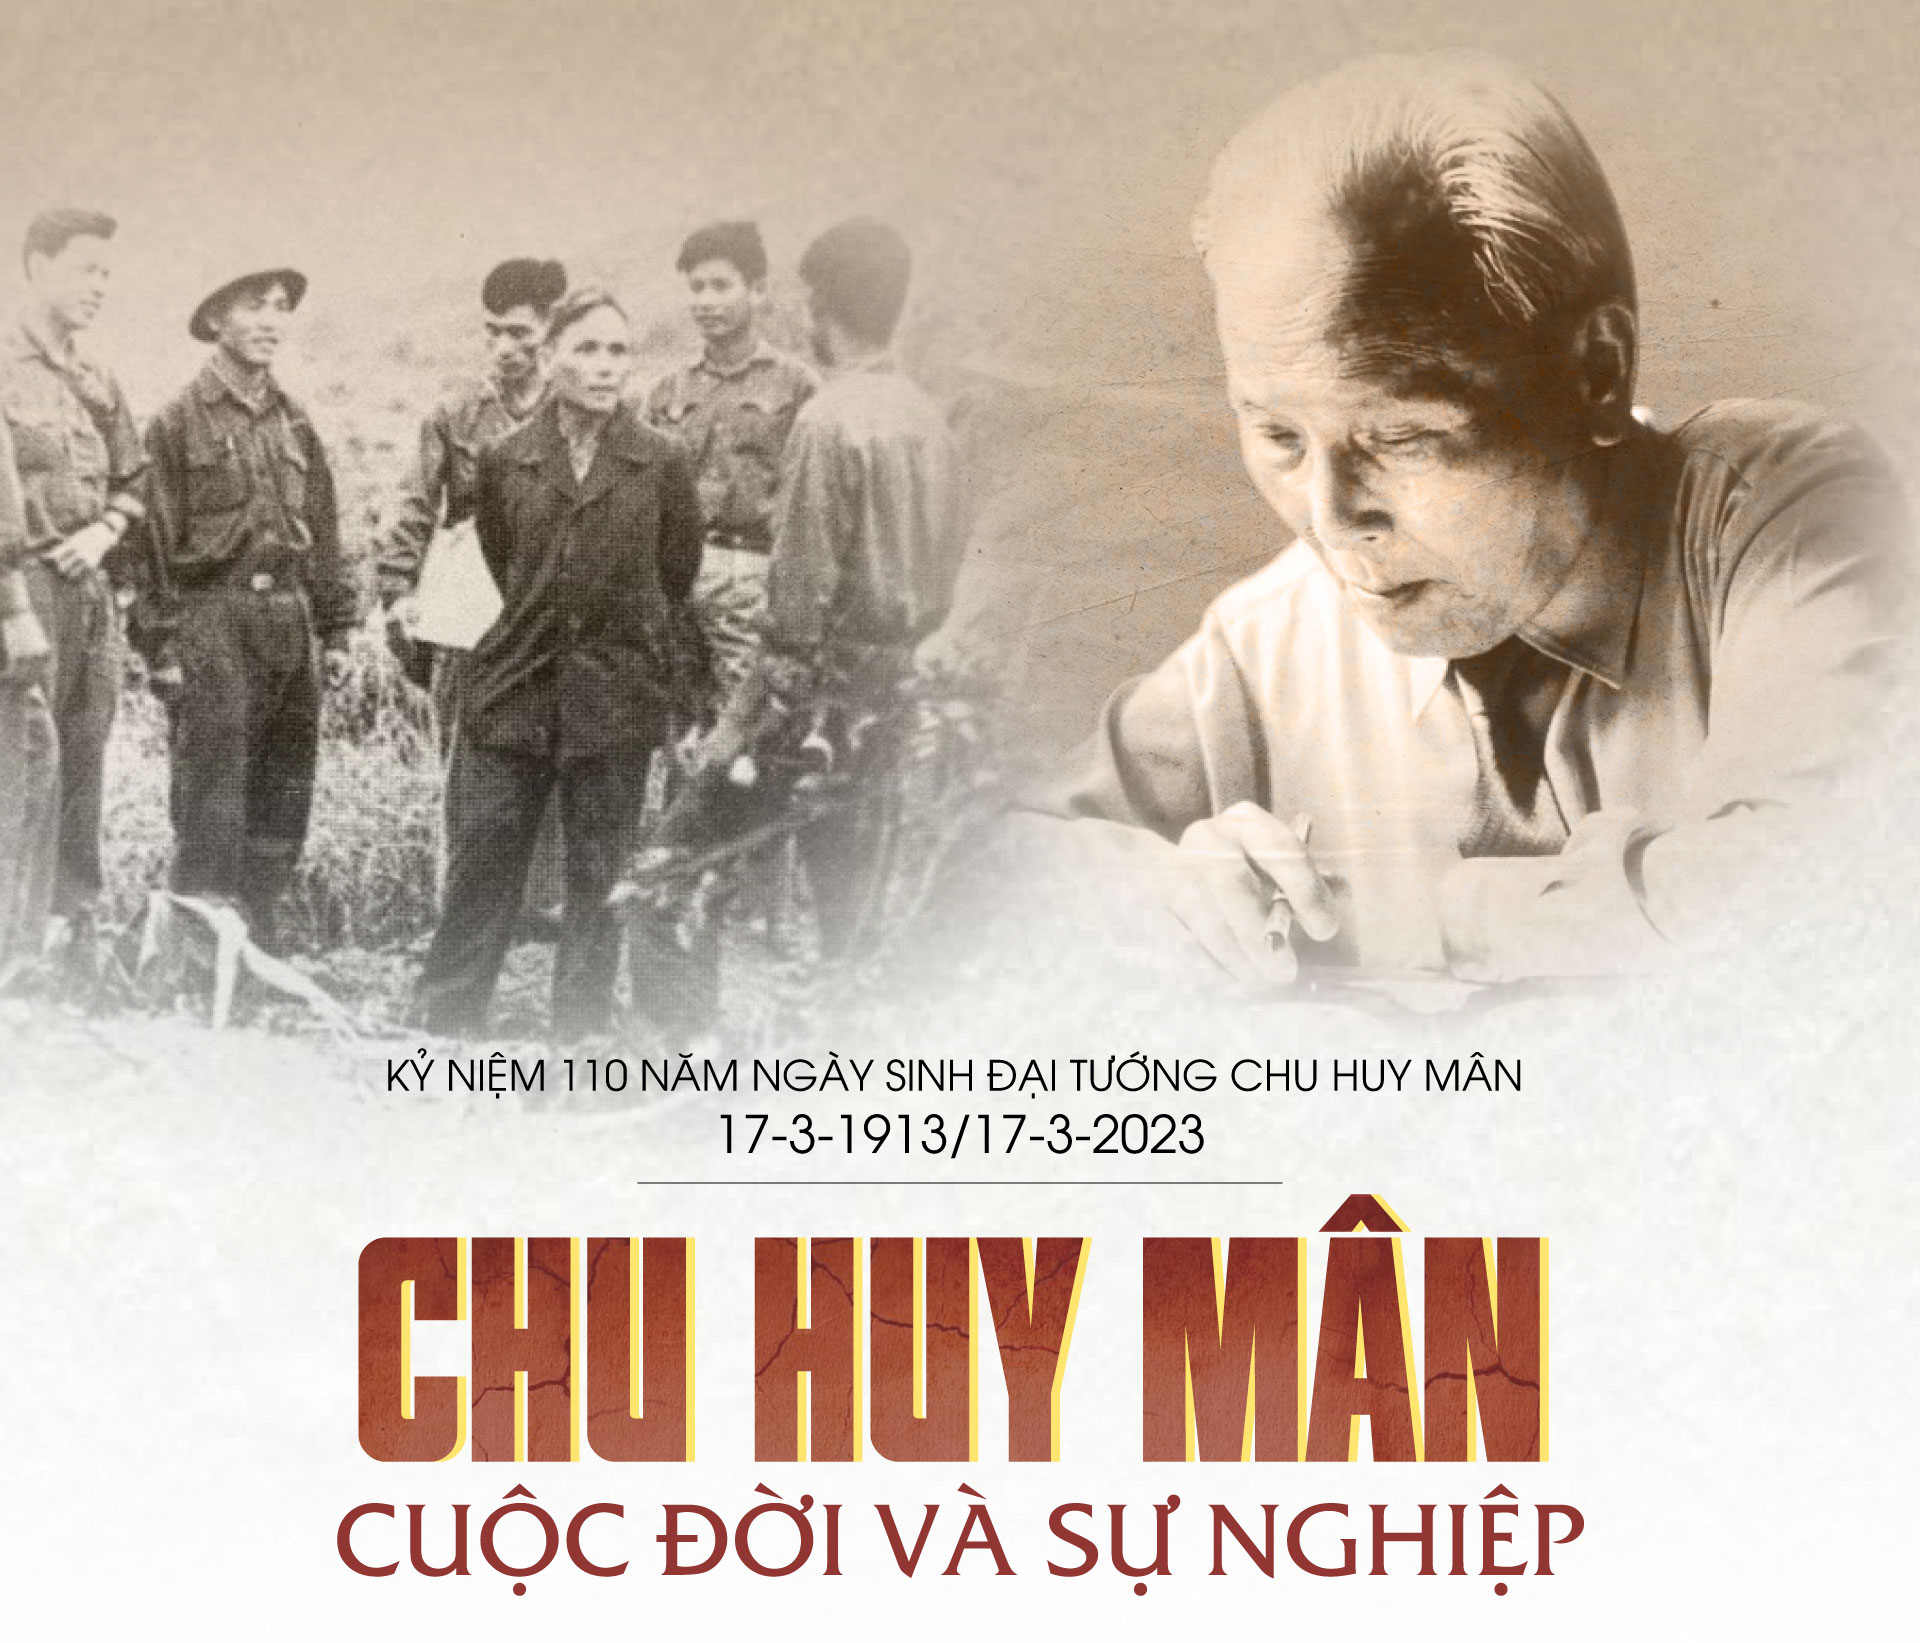 Kỷ niệm 110 năm Ngày sinh Đại tướng Chu Huy Mân (17-3-1913/17-3-2023): Chu Huy Mân - Cuộc đời và sự nghiệp